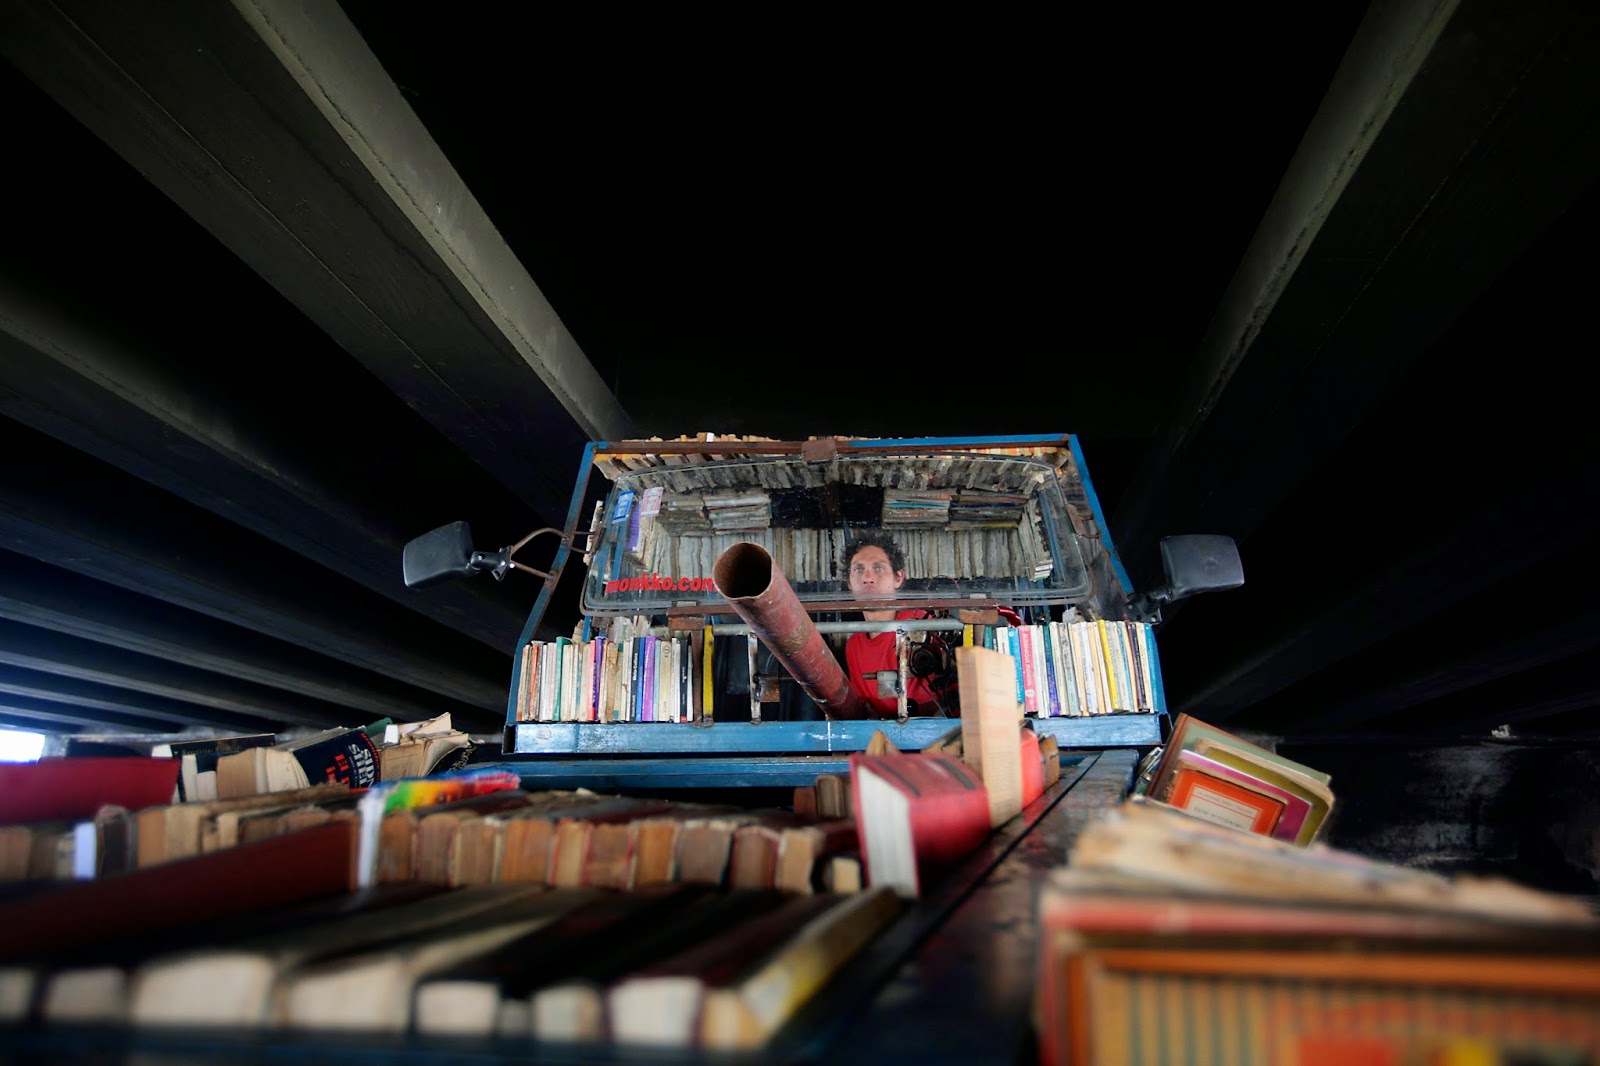 Car library. Аргентинский художник Рауль Лемесофф. Современная библиотека. Танк из книг в библиотеке. Машина библиотека.